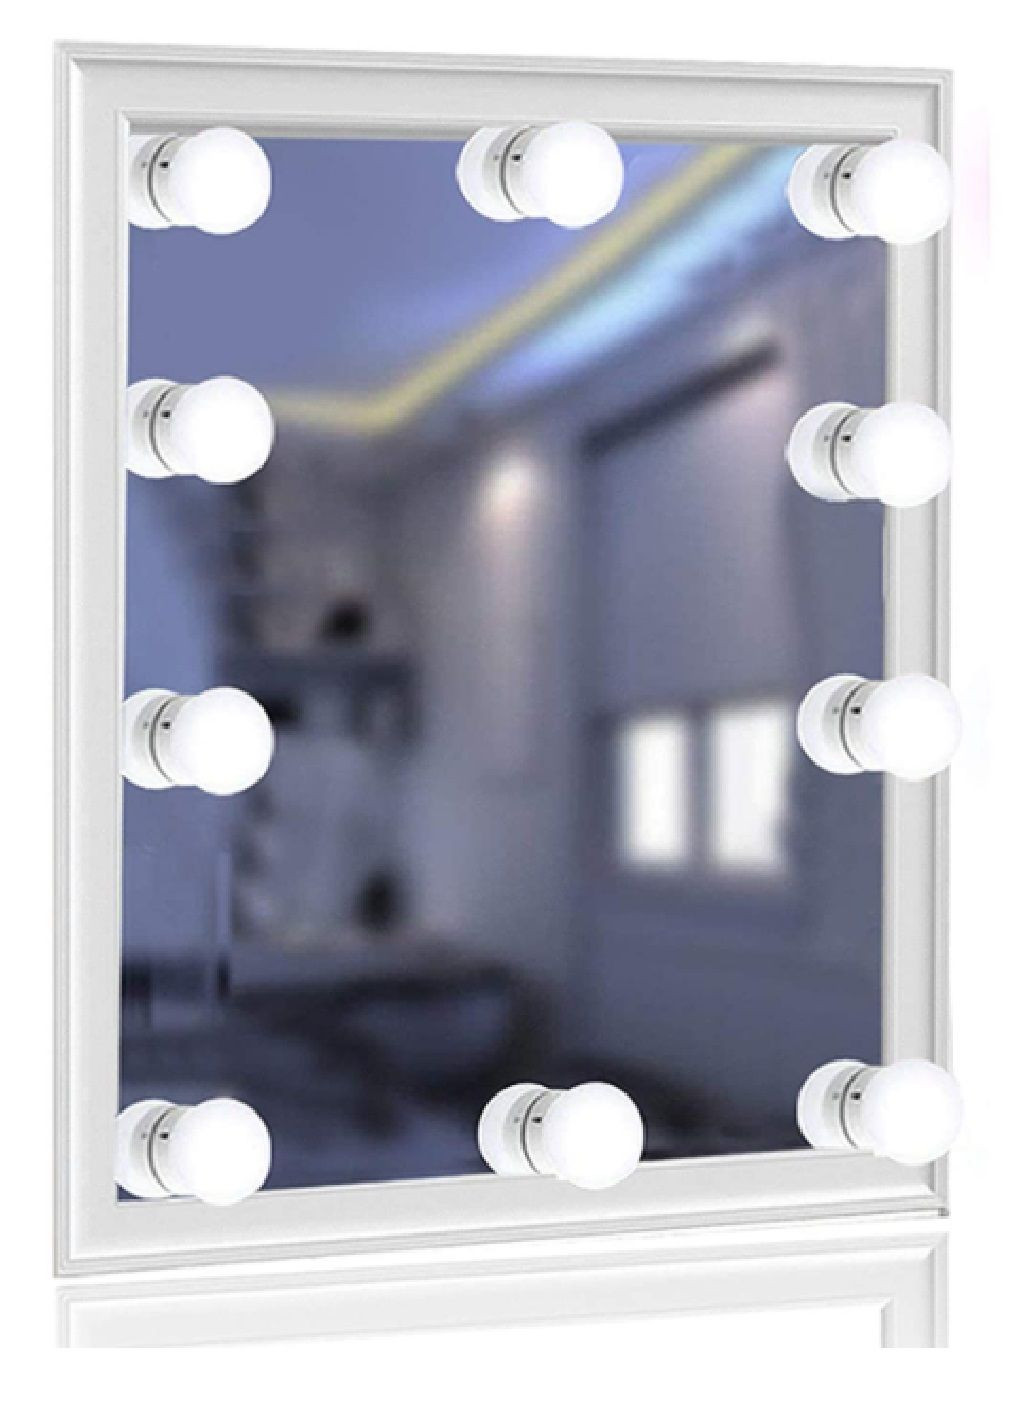 Підсвічування лампочки світильники для дзеркала з пультом регулюванням яскравості колірного режиму 10 ламп (476517-Prob) Unbranded (283323594)